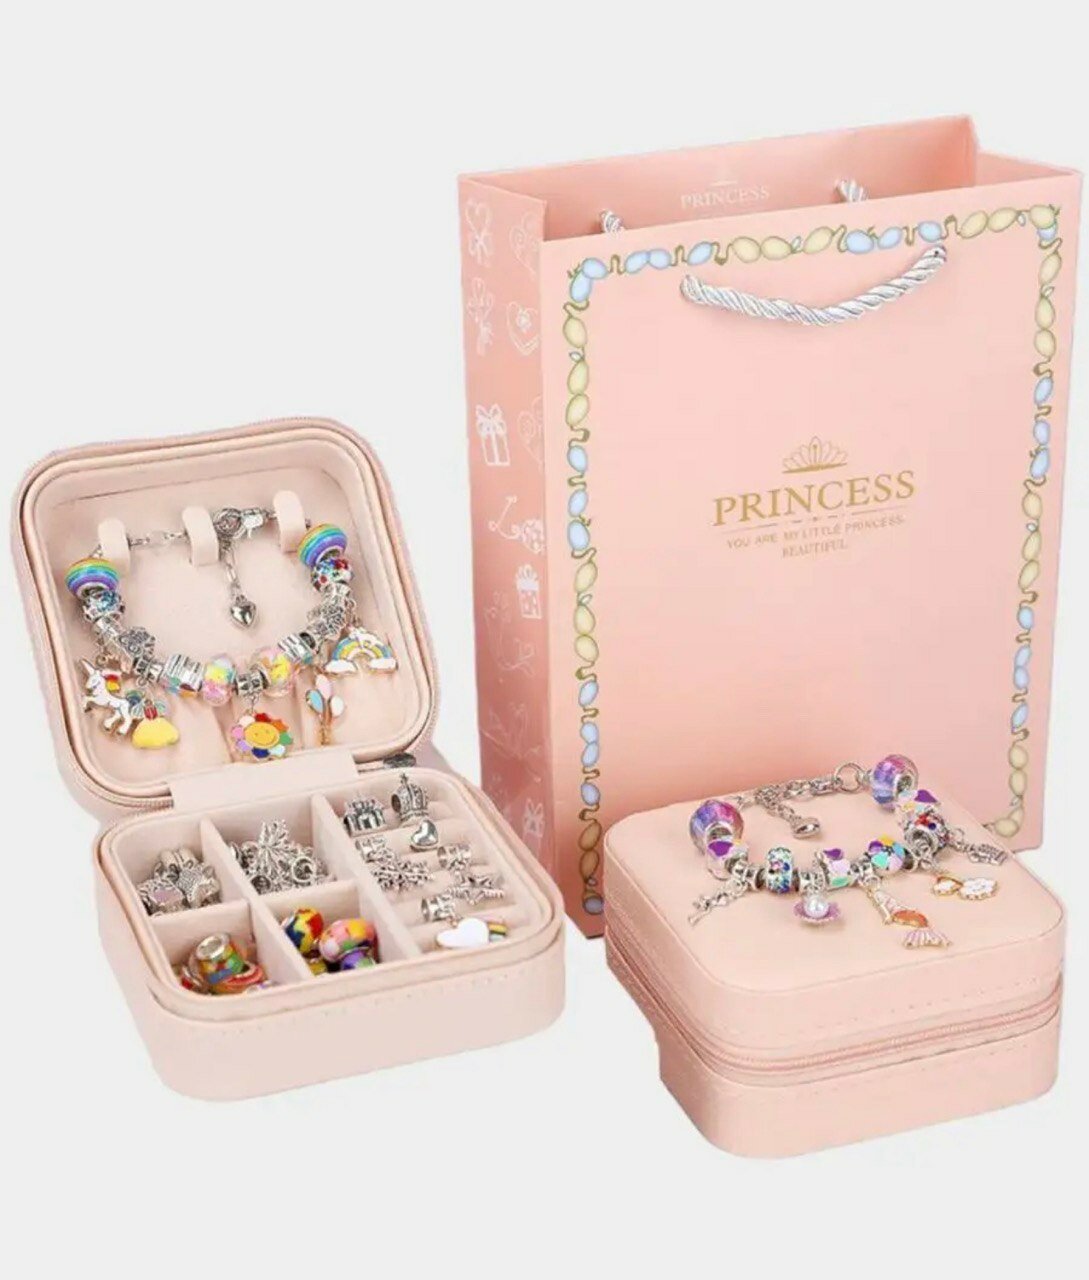 Радужный набор для создания браслетов и украшений в шкатулке, подарок для девочки и подруги на день рождения